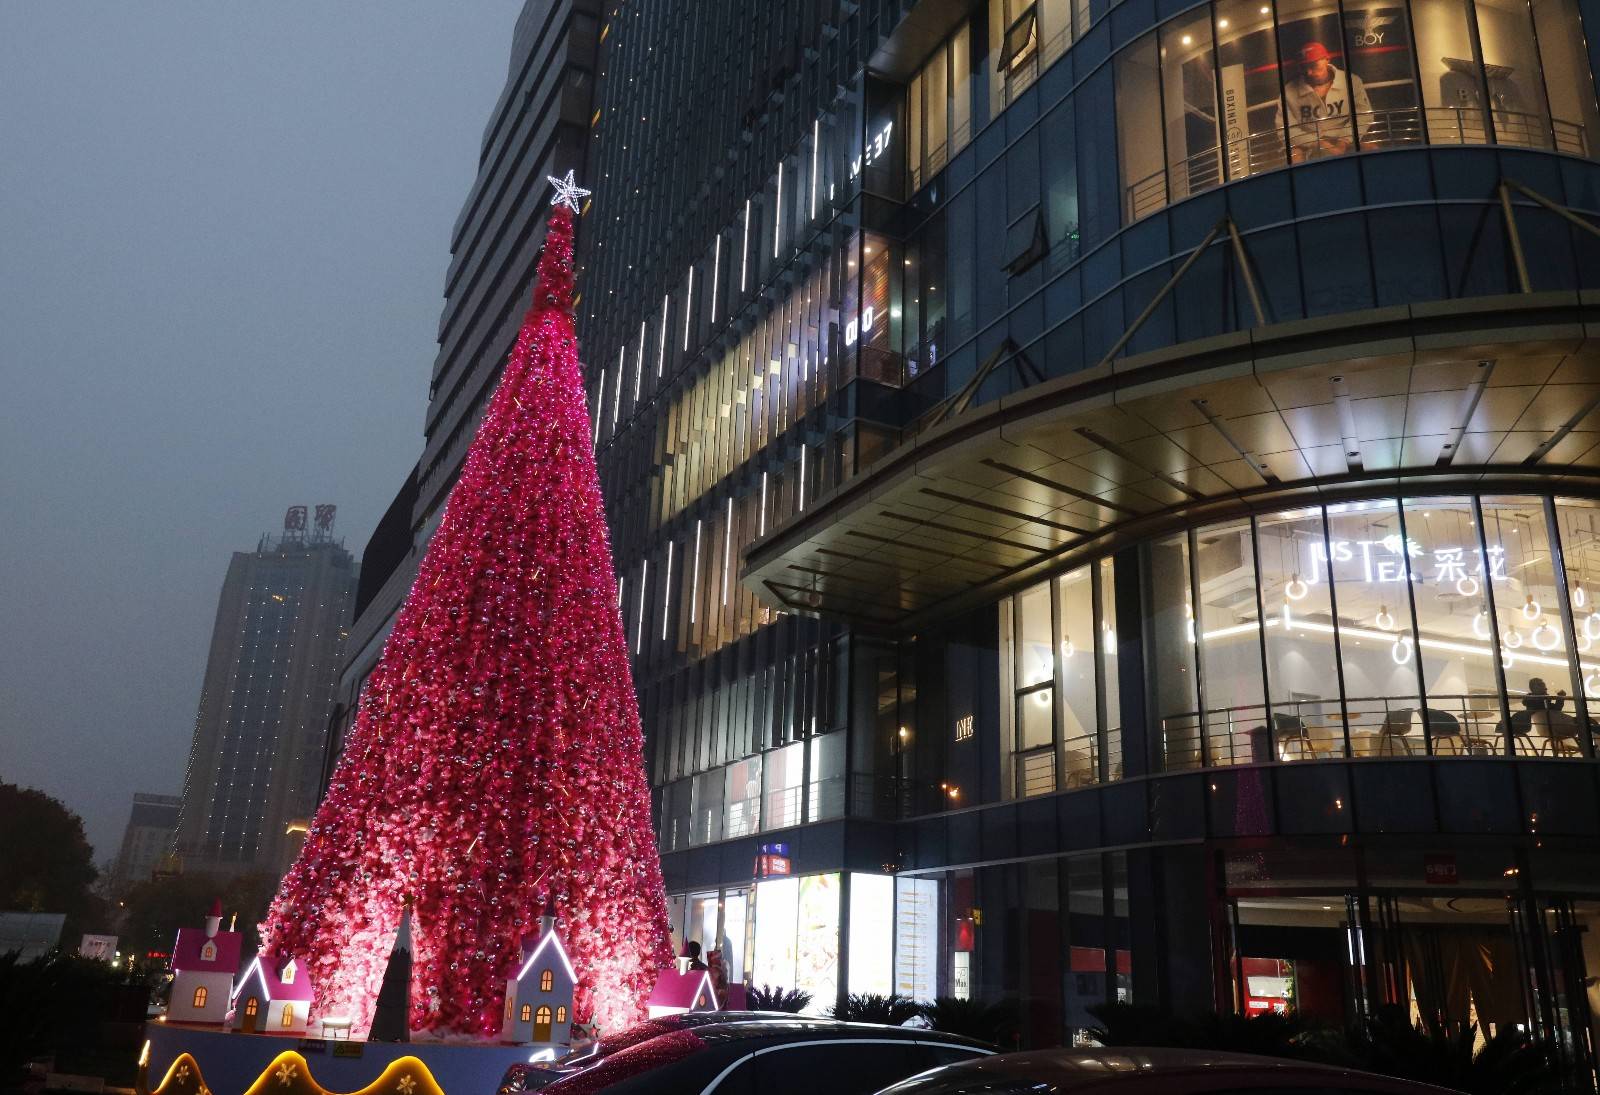 5米高巨型圣诞树宜昌街头亮灯,流光溢彩